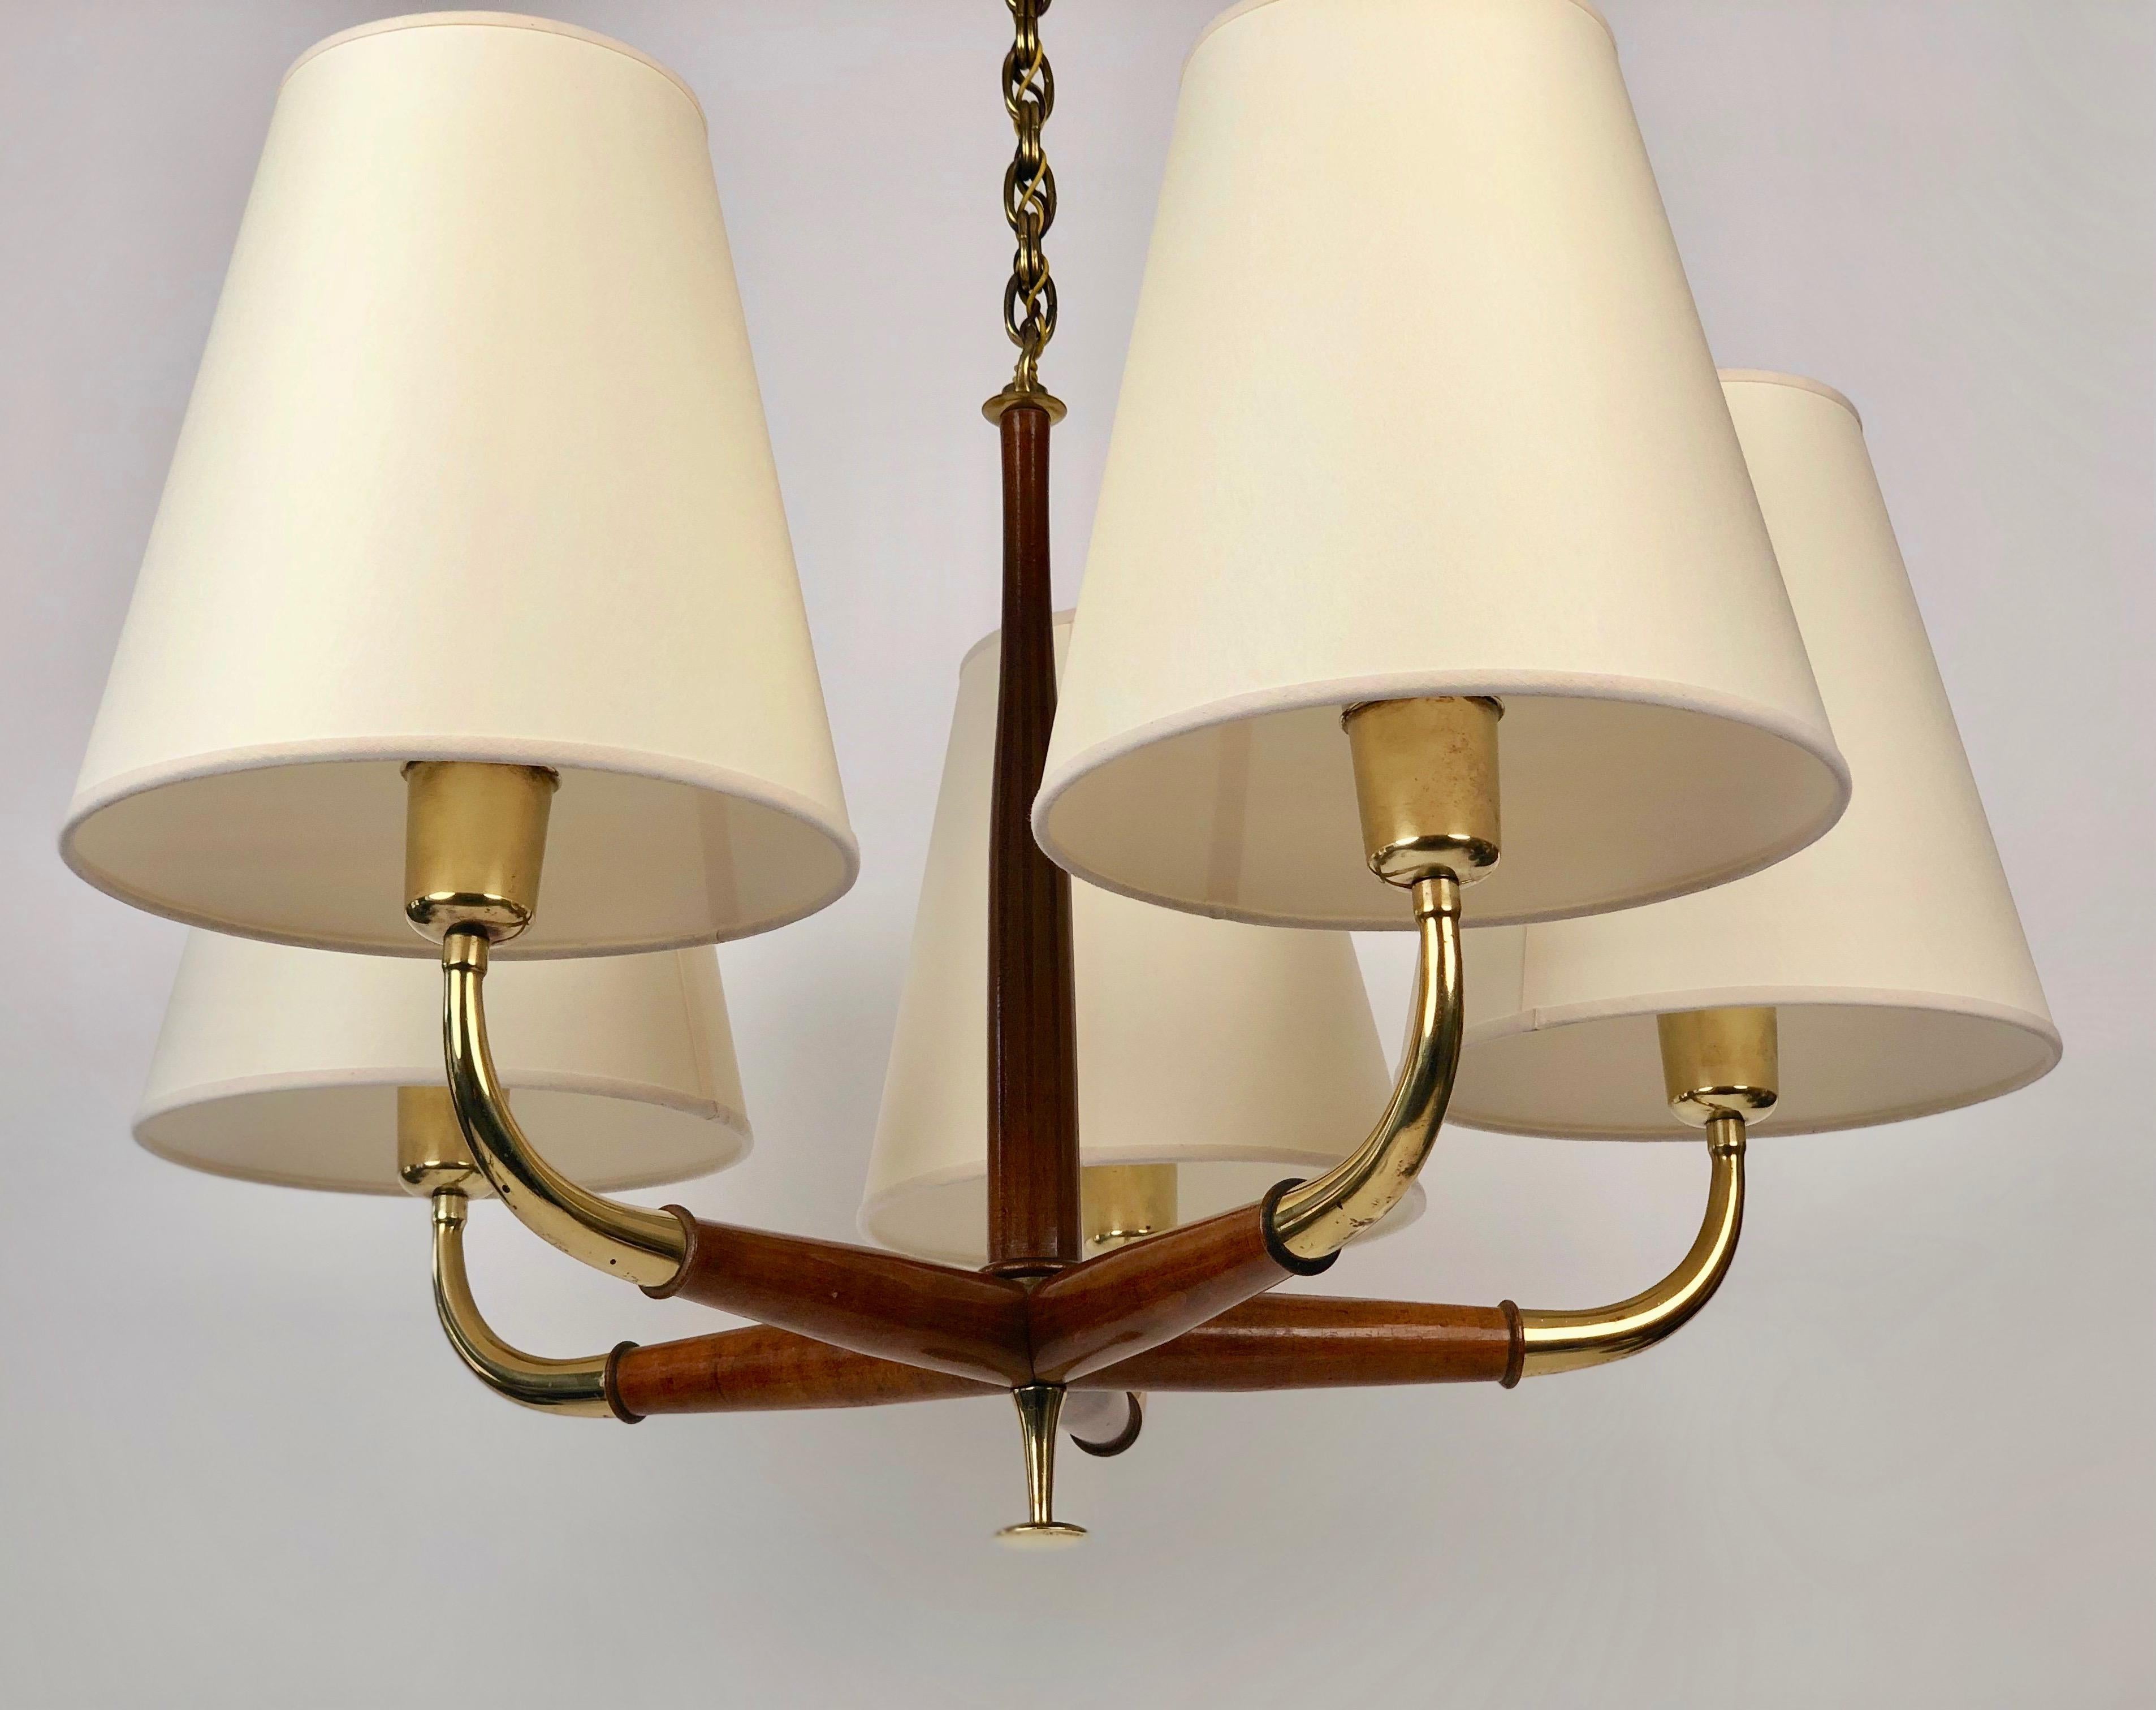 Magnifique lampe suspendue à cinq bras de Josef Franks en laiton et noyer.
Les éléments en bois et en laiton présentent une belle patine qui confère à la lampe une chaleur visuelle.

Les abat-jours sont nouveaux, fabriqués en papier, d'après les